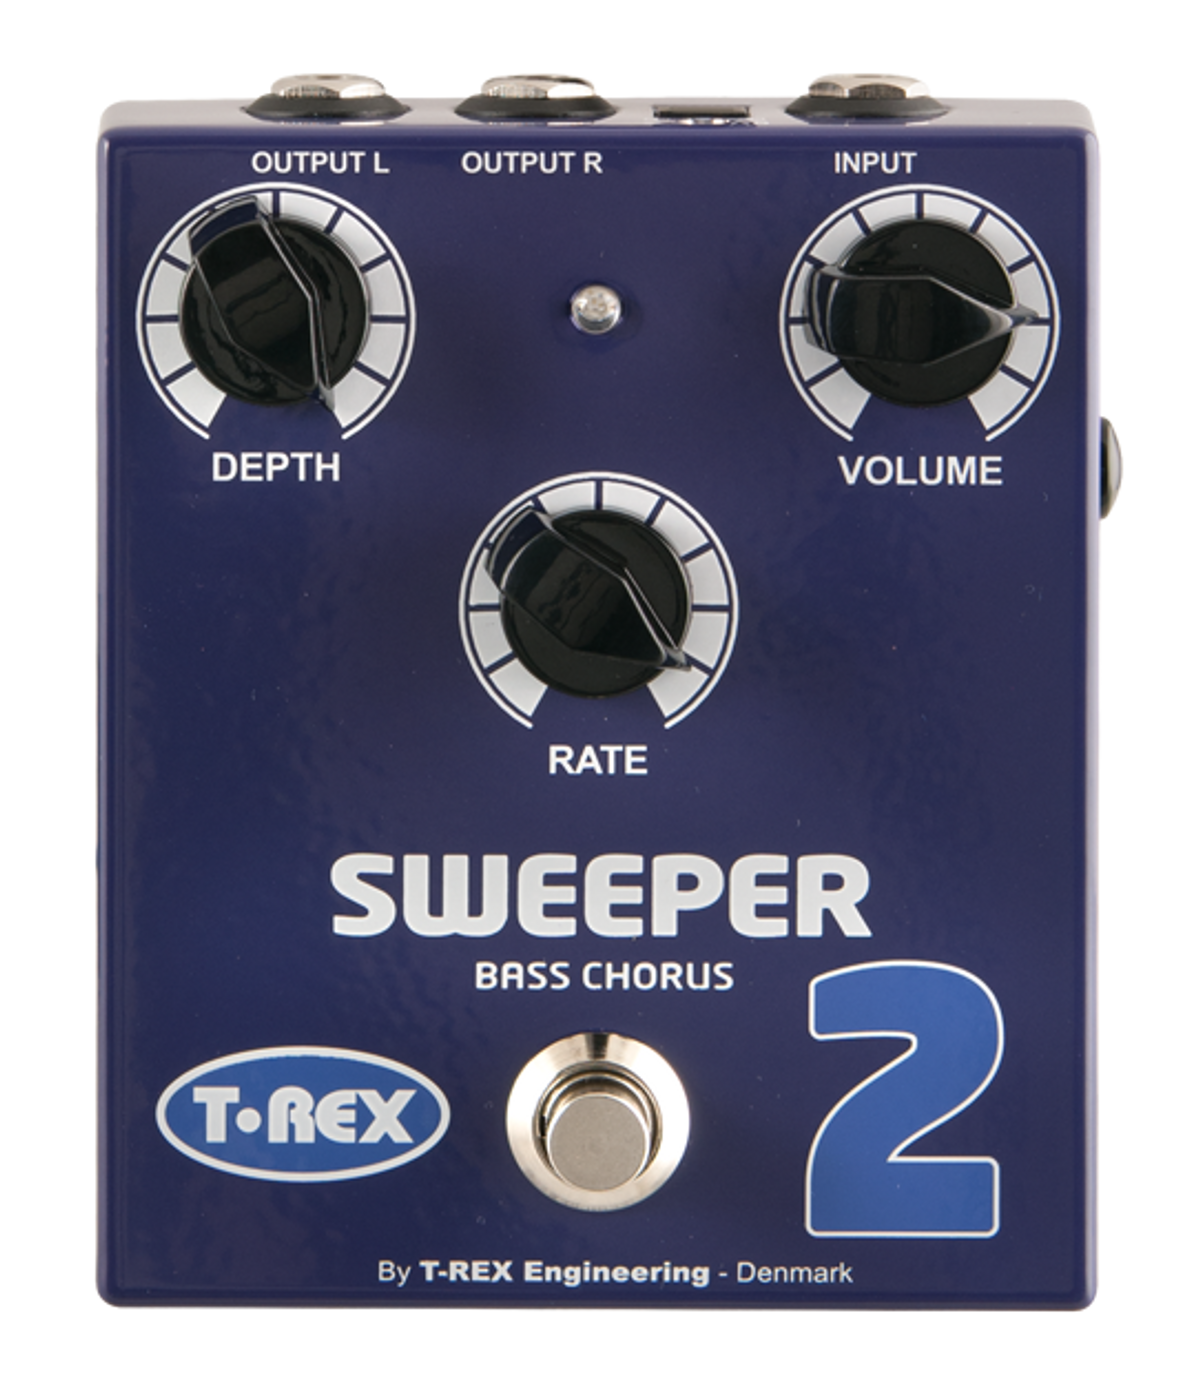 T-Rex Sweeper 2 Bass Chorus Pedal Review